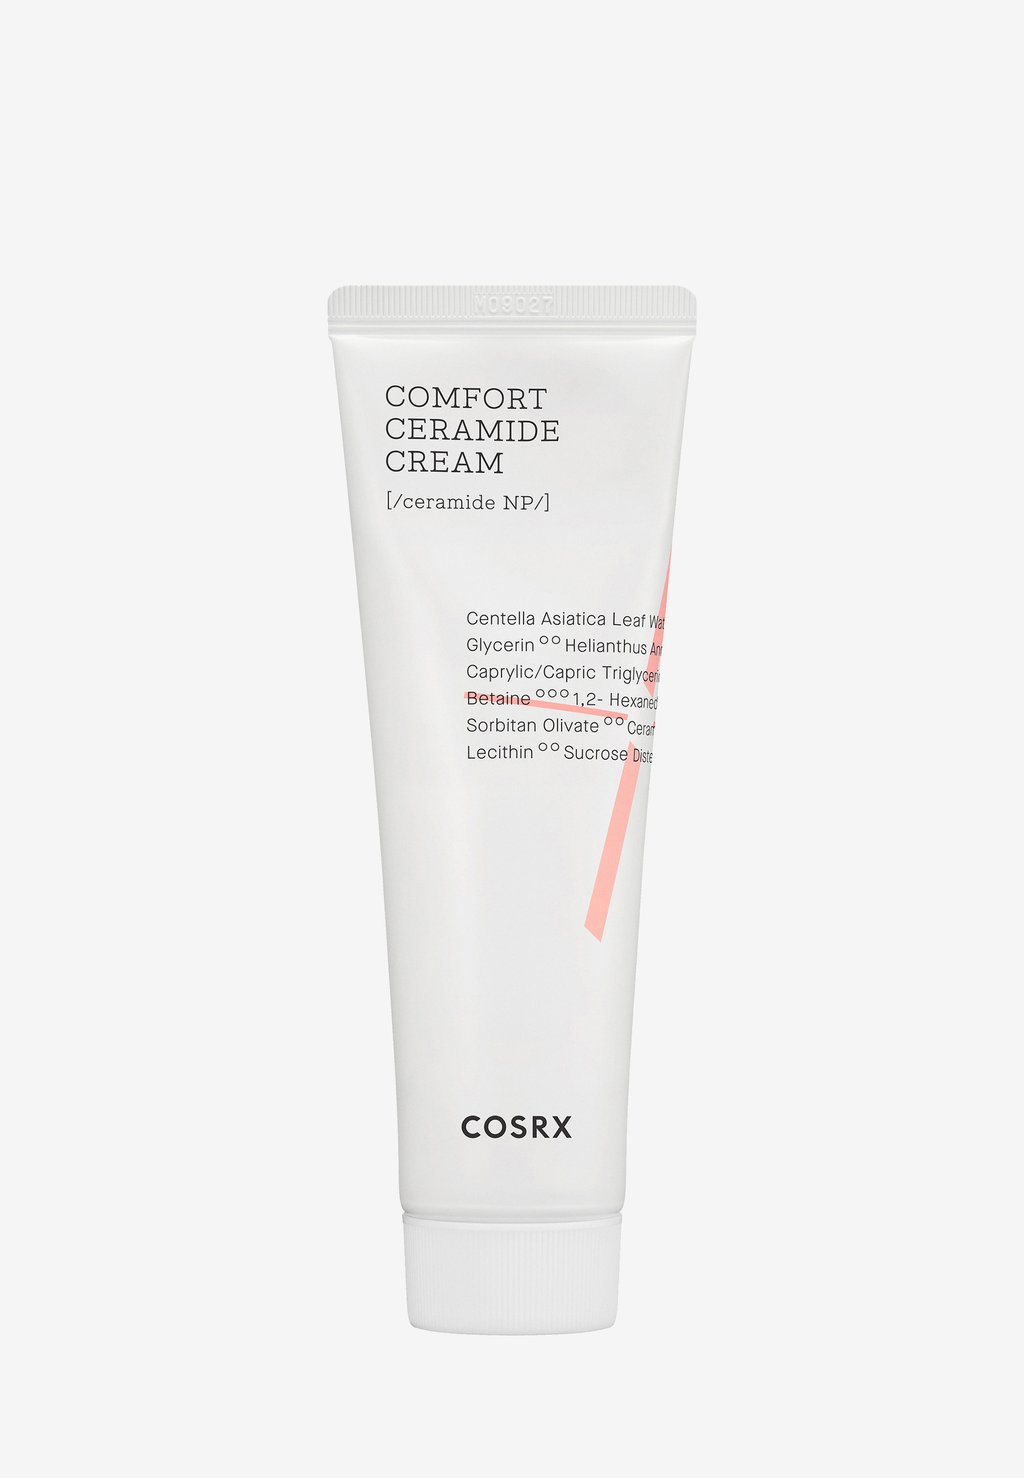 Дневной крем Comfort Ceramide Cream COSRX